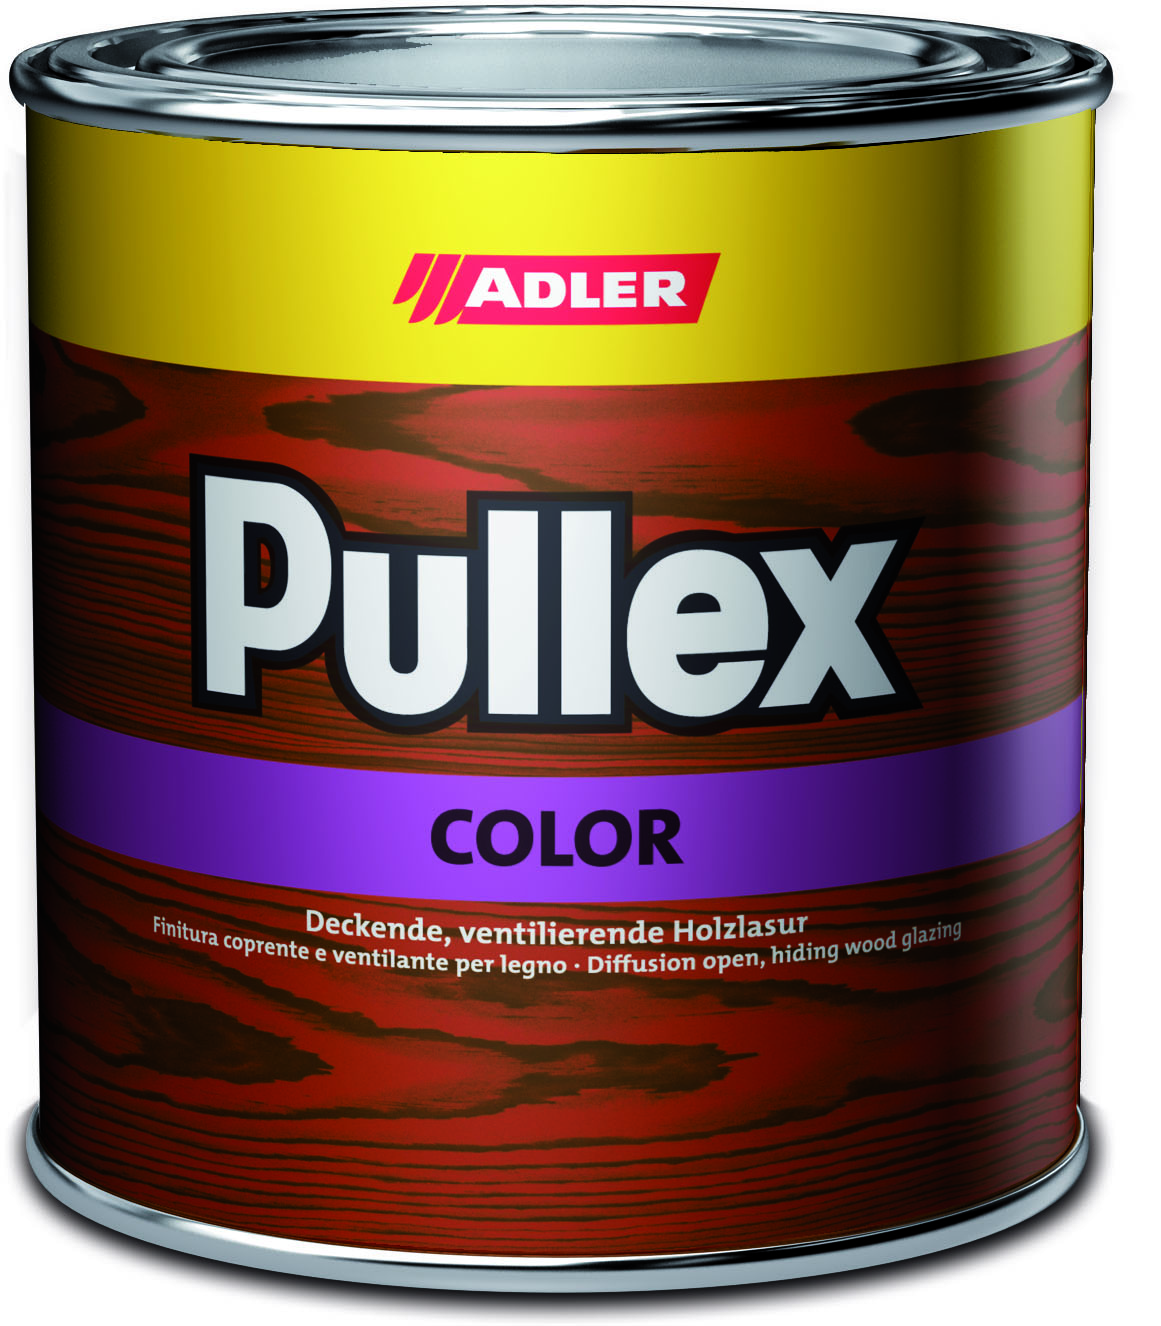 ADLER PULLEX COLOR - Ochranná farba na drevo do exteriéru 10 l ral 3003 - rubínová